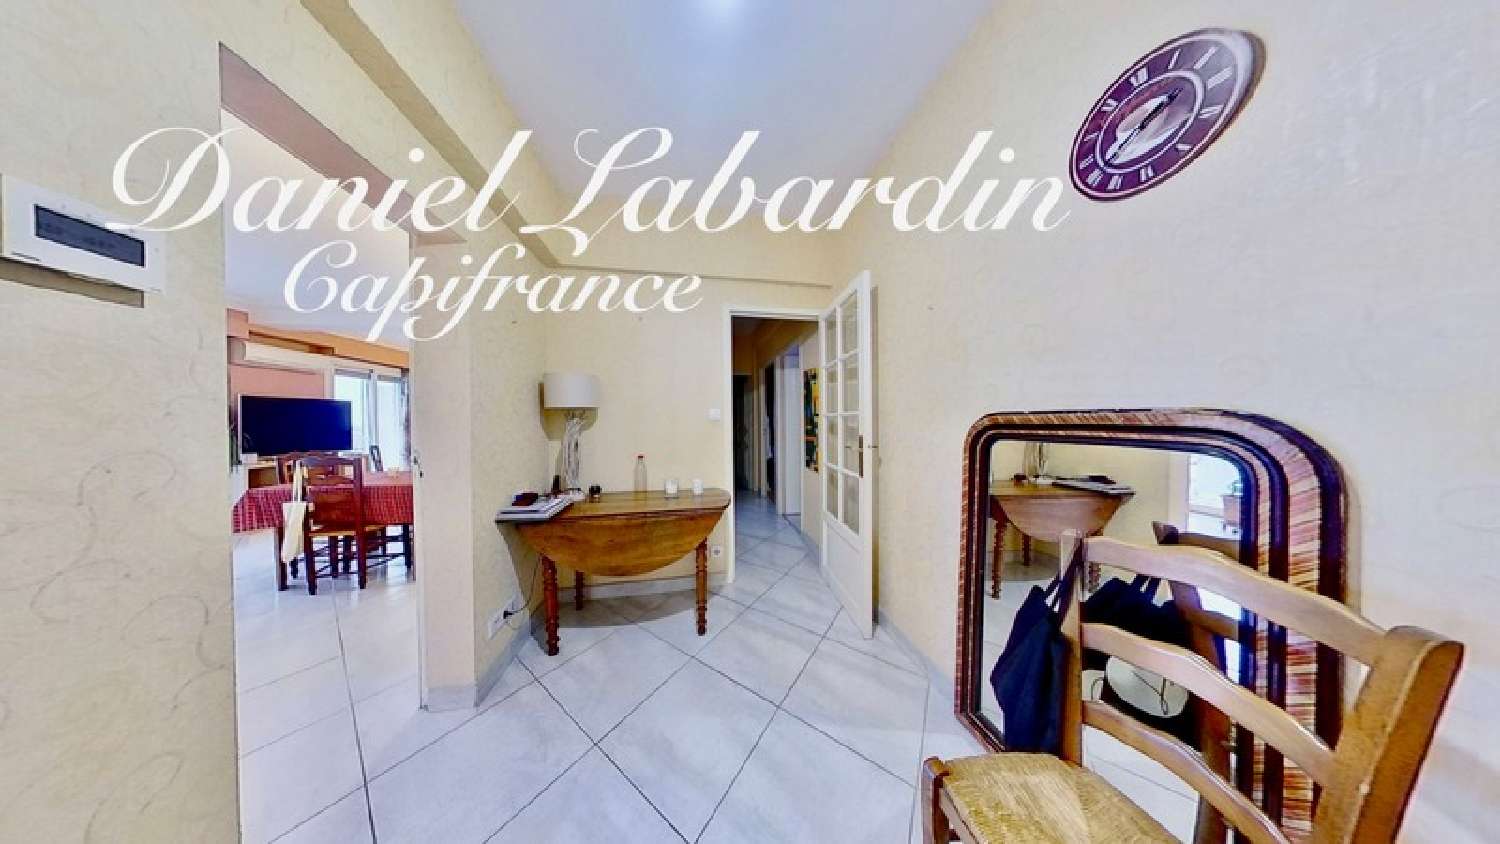  à vendre appartement Marmande Lot-et-Garonne 5